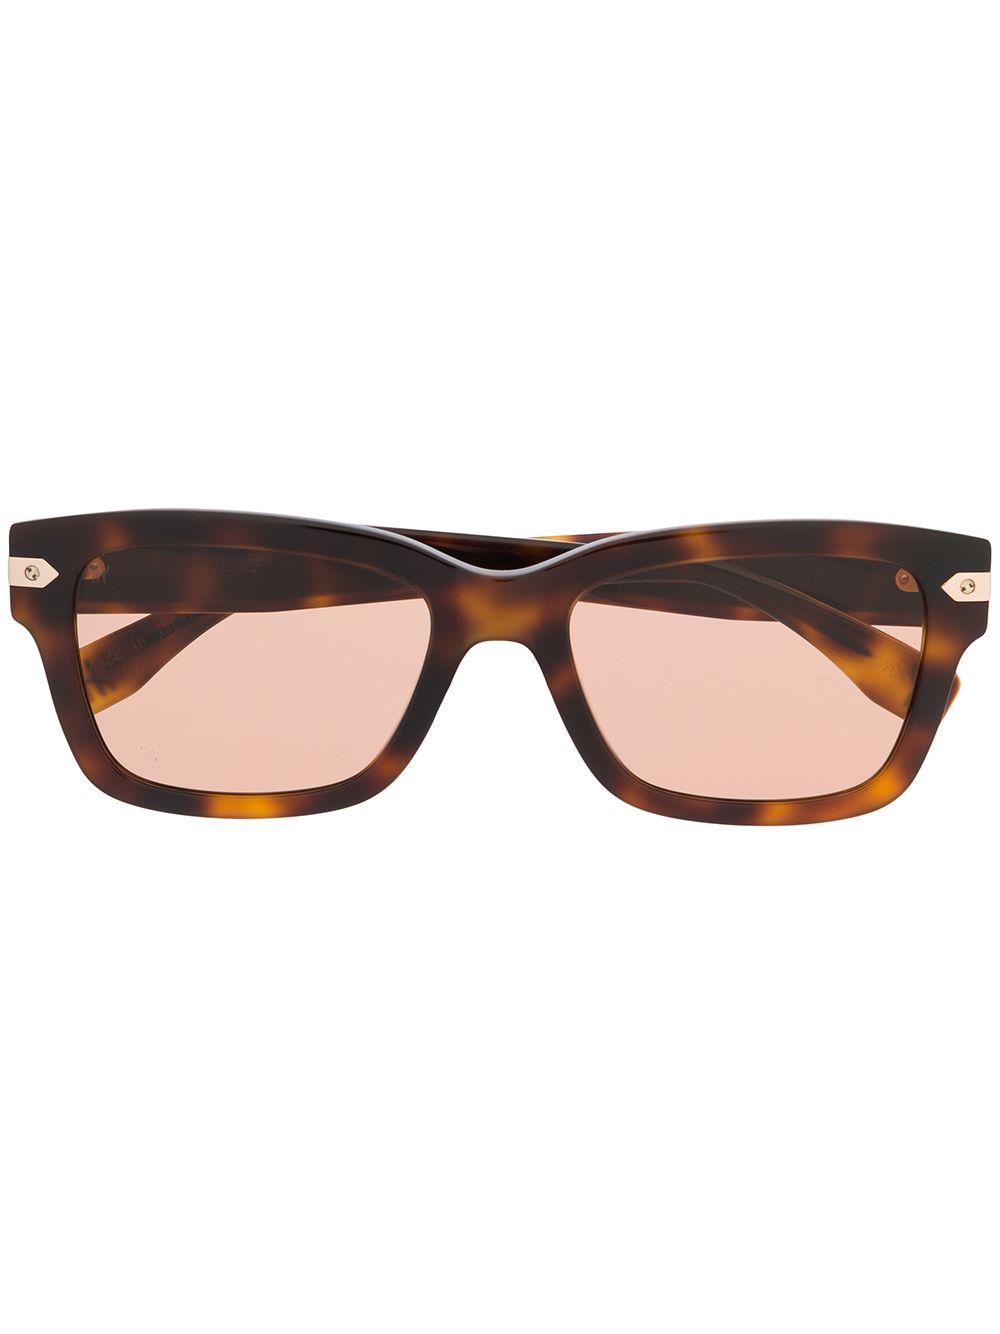 фото Hublot eyewear солнцезащитные очки черепаховой расцветки